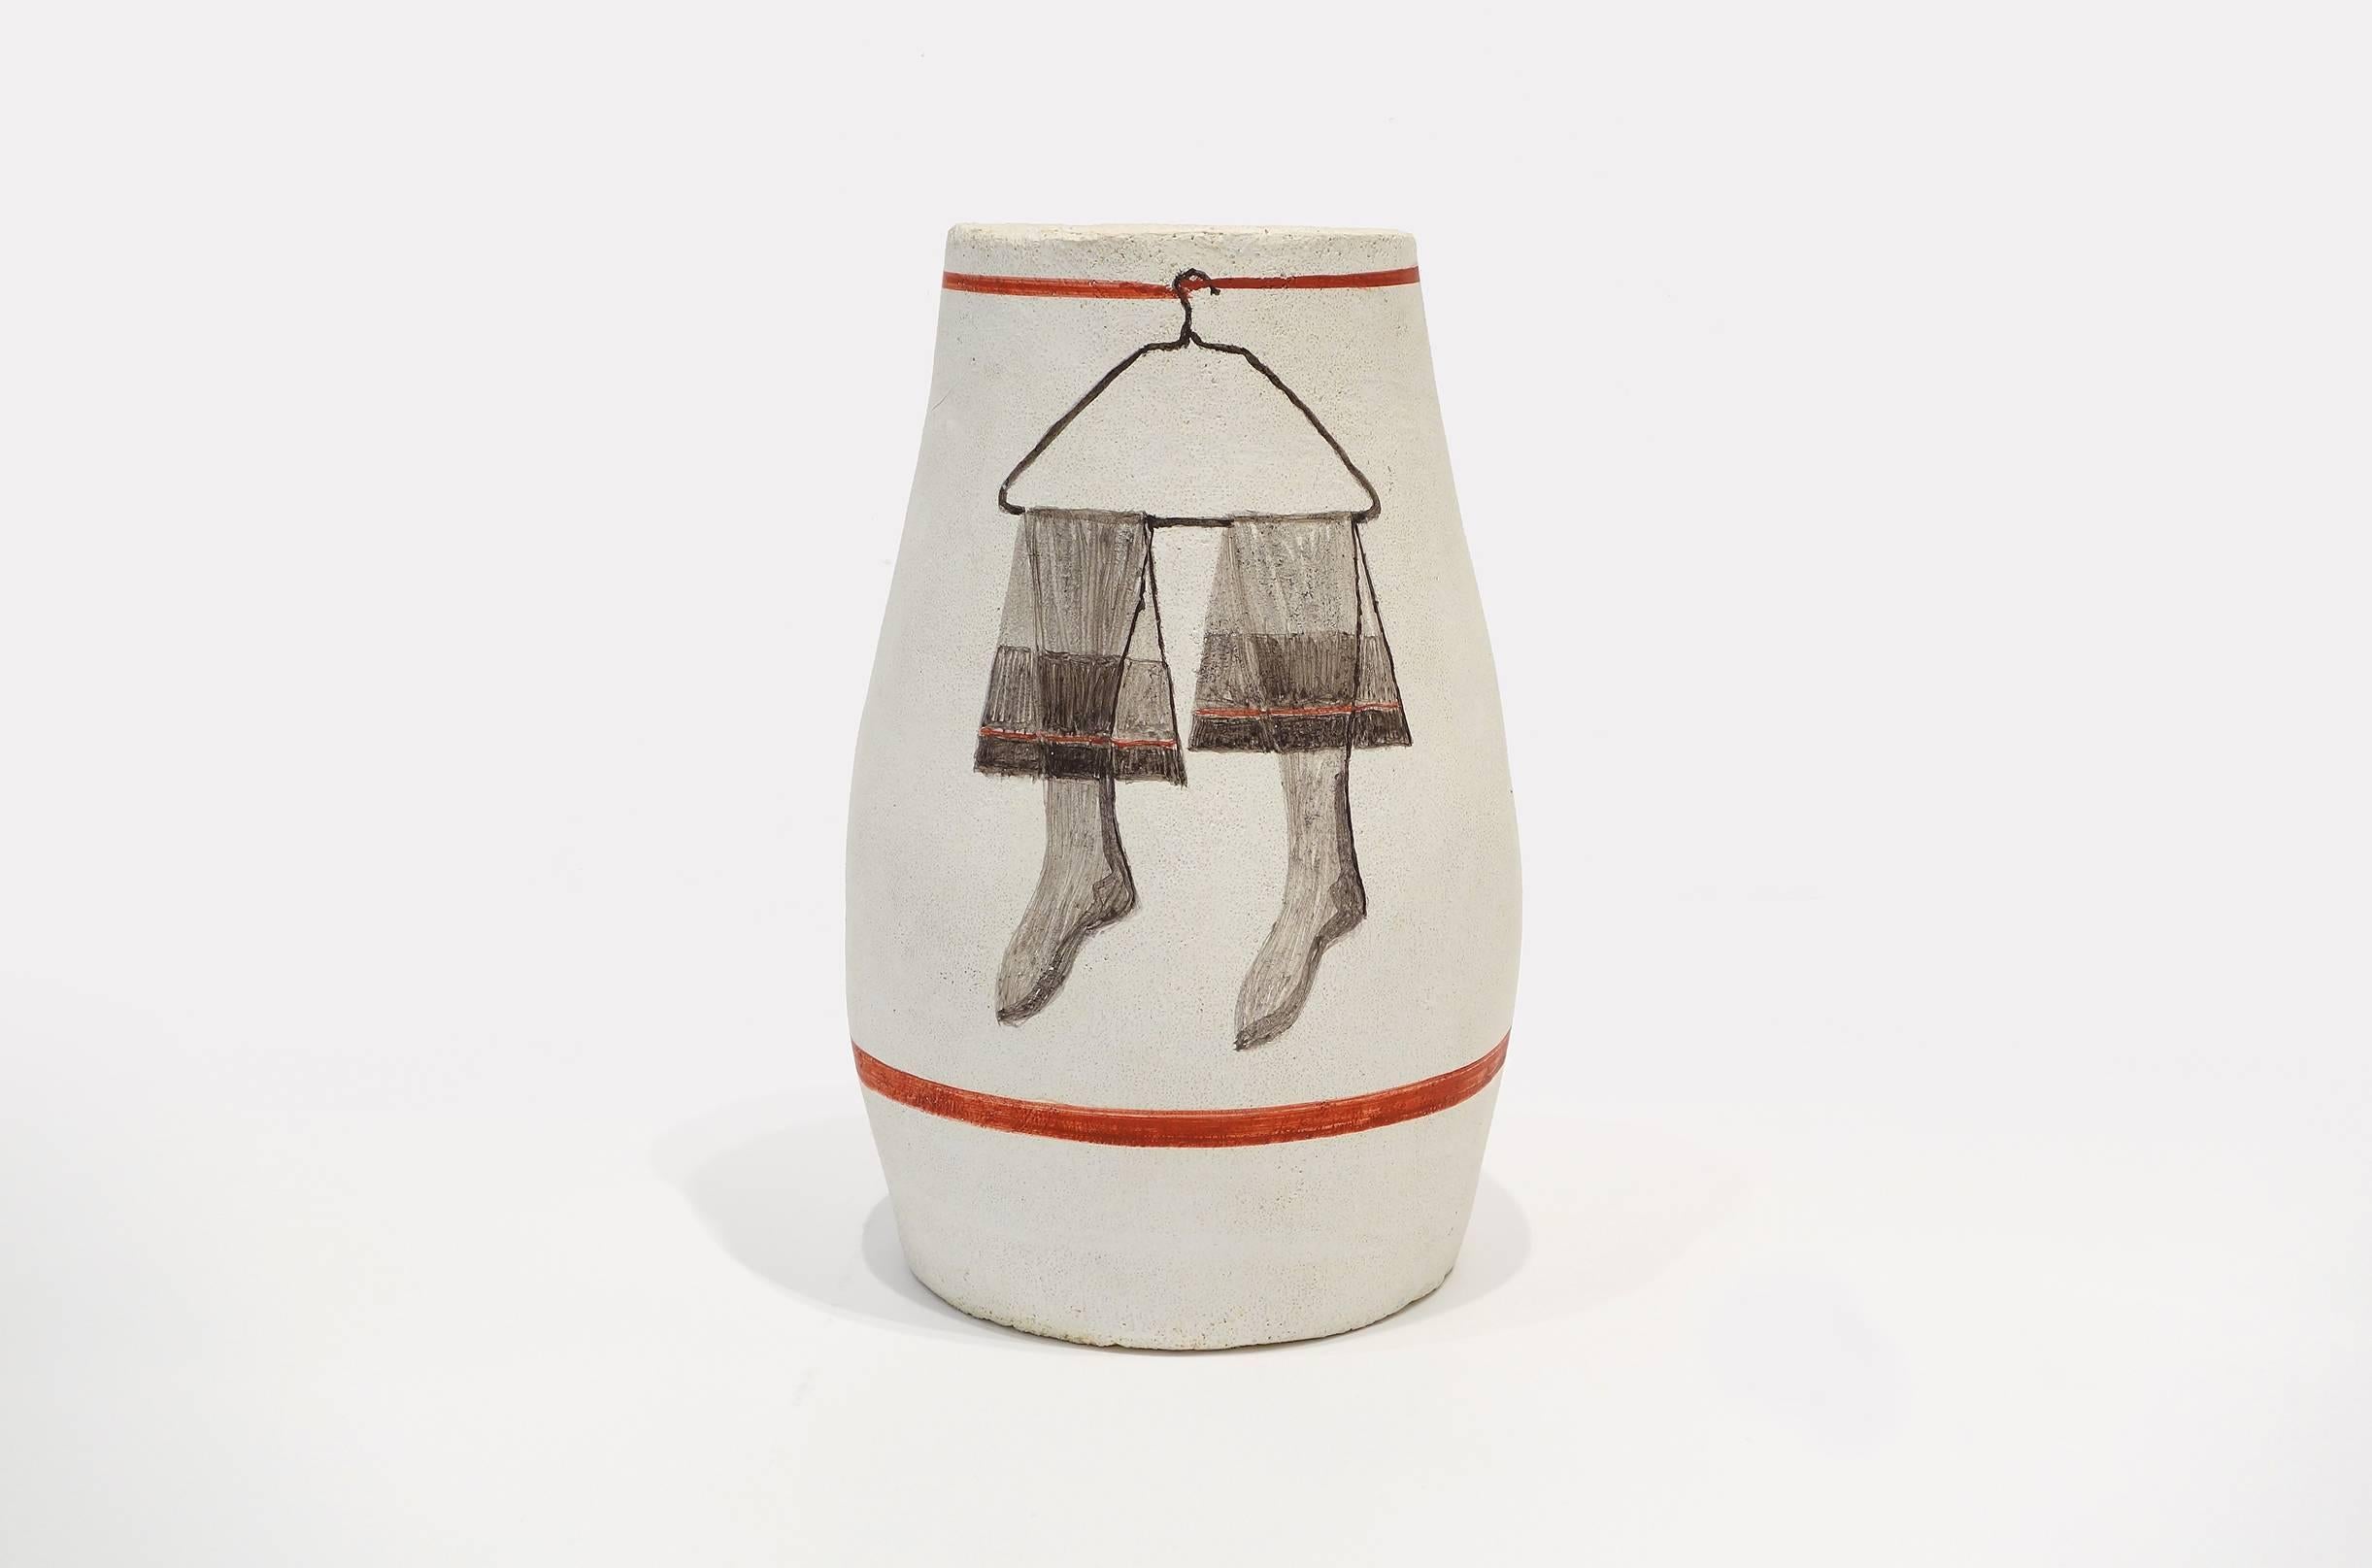 Untitled Stocking Vase - Sculpture by George Schneeman